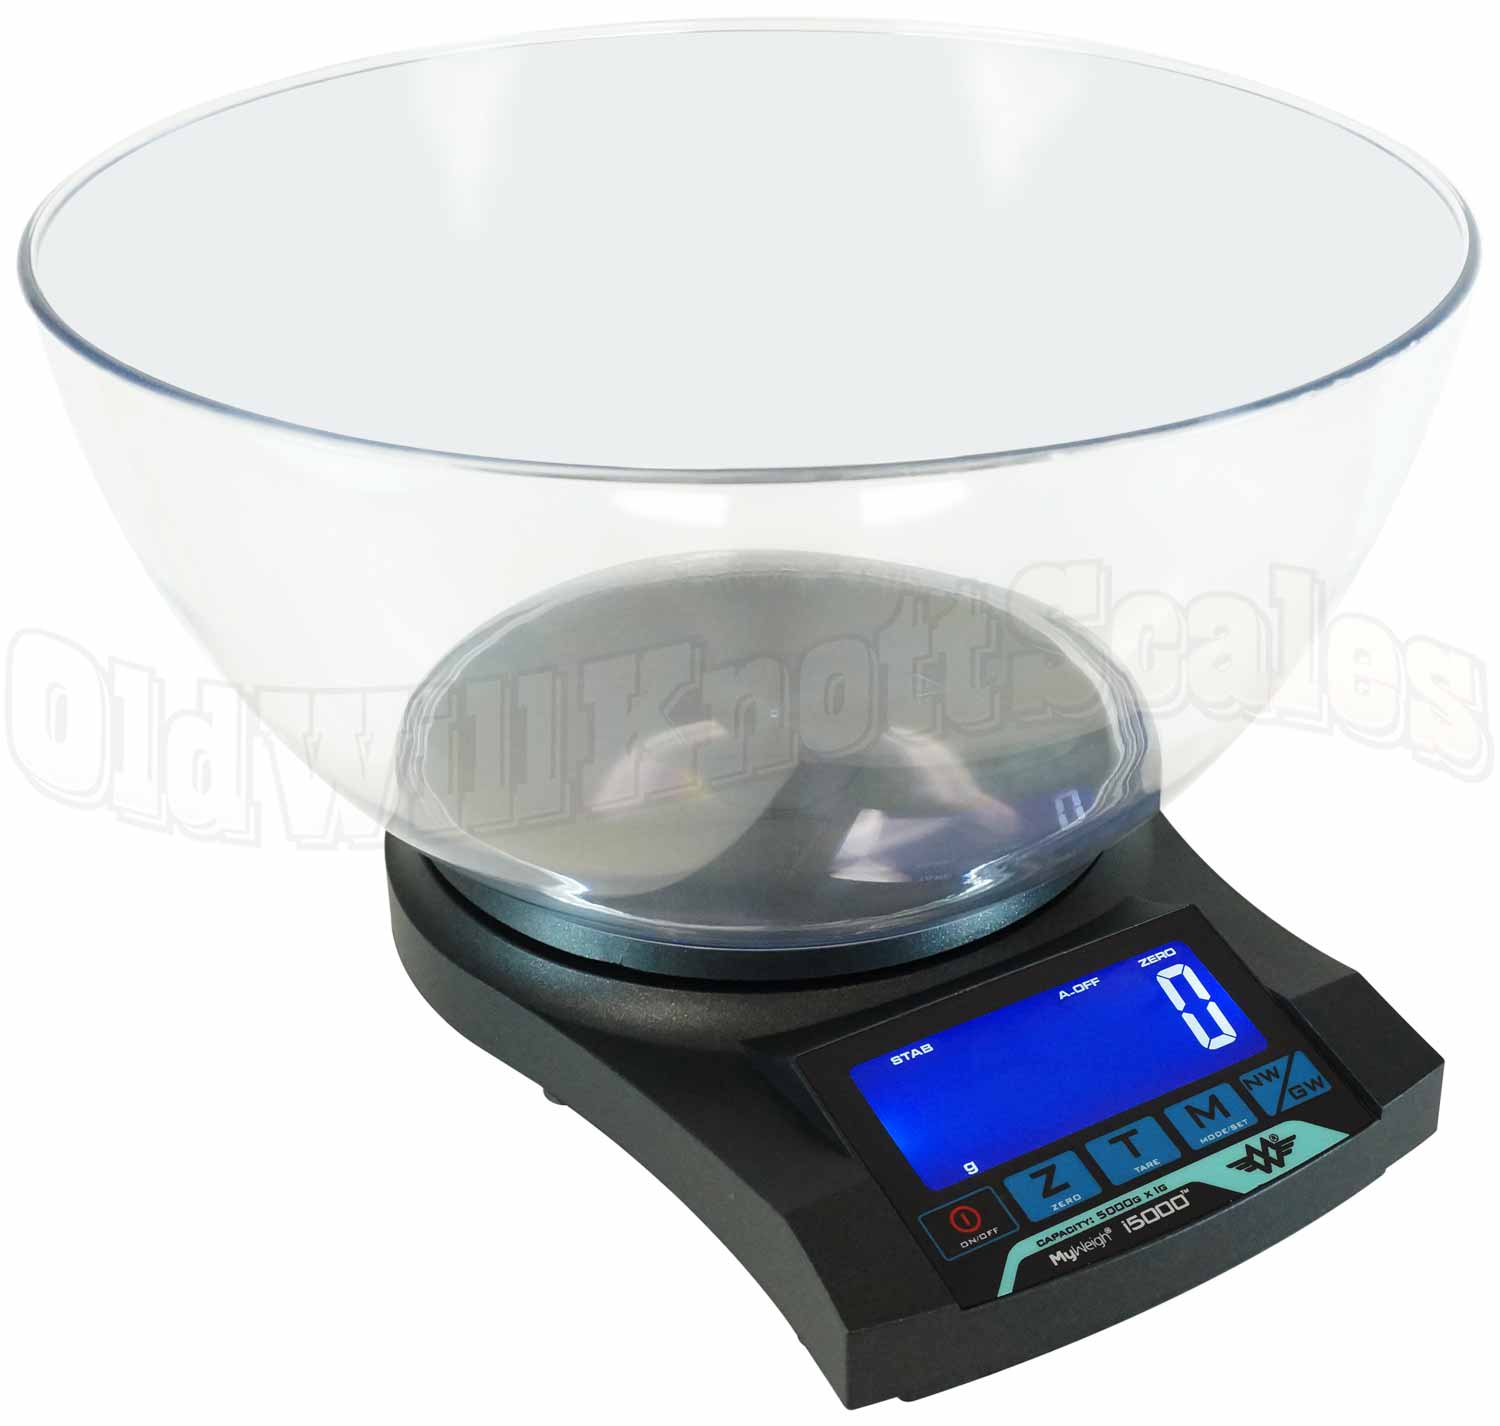 Kitchen Scale Bowl